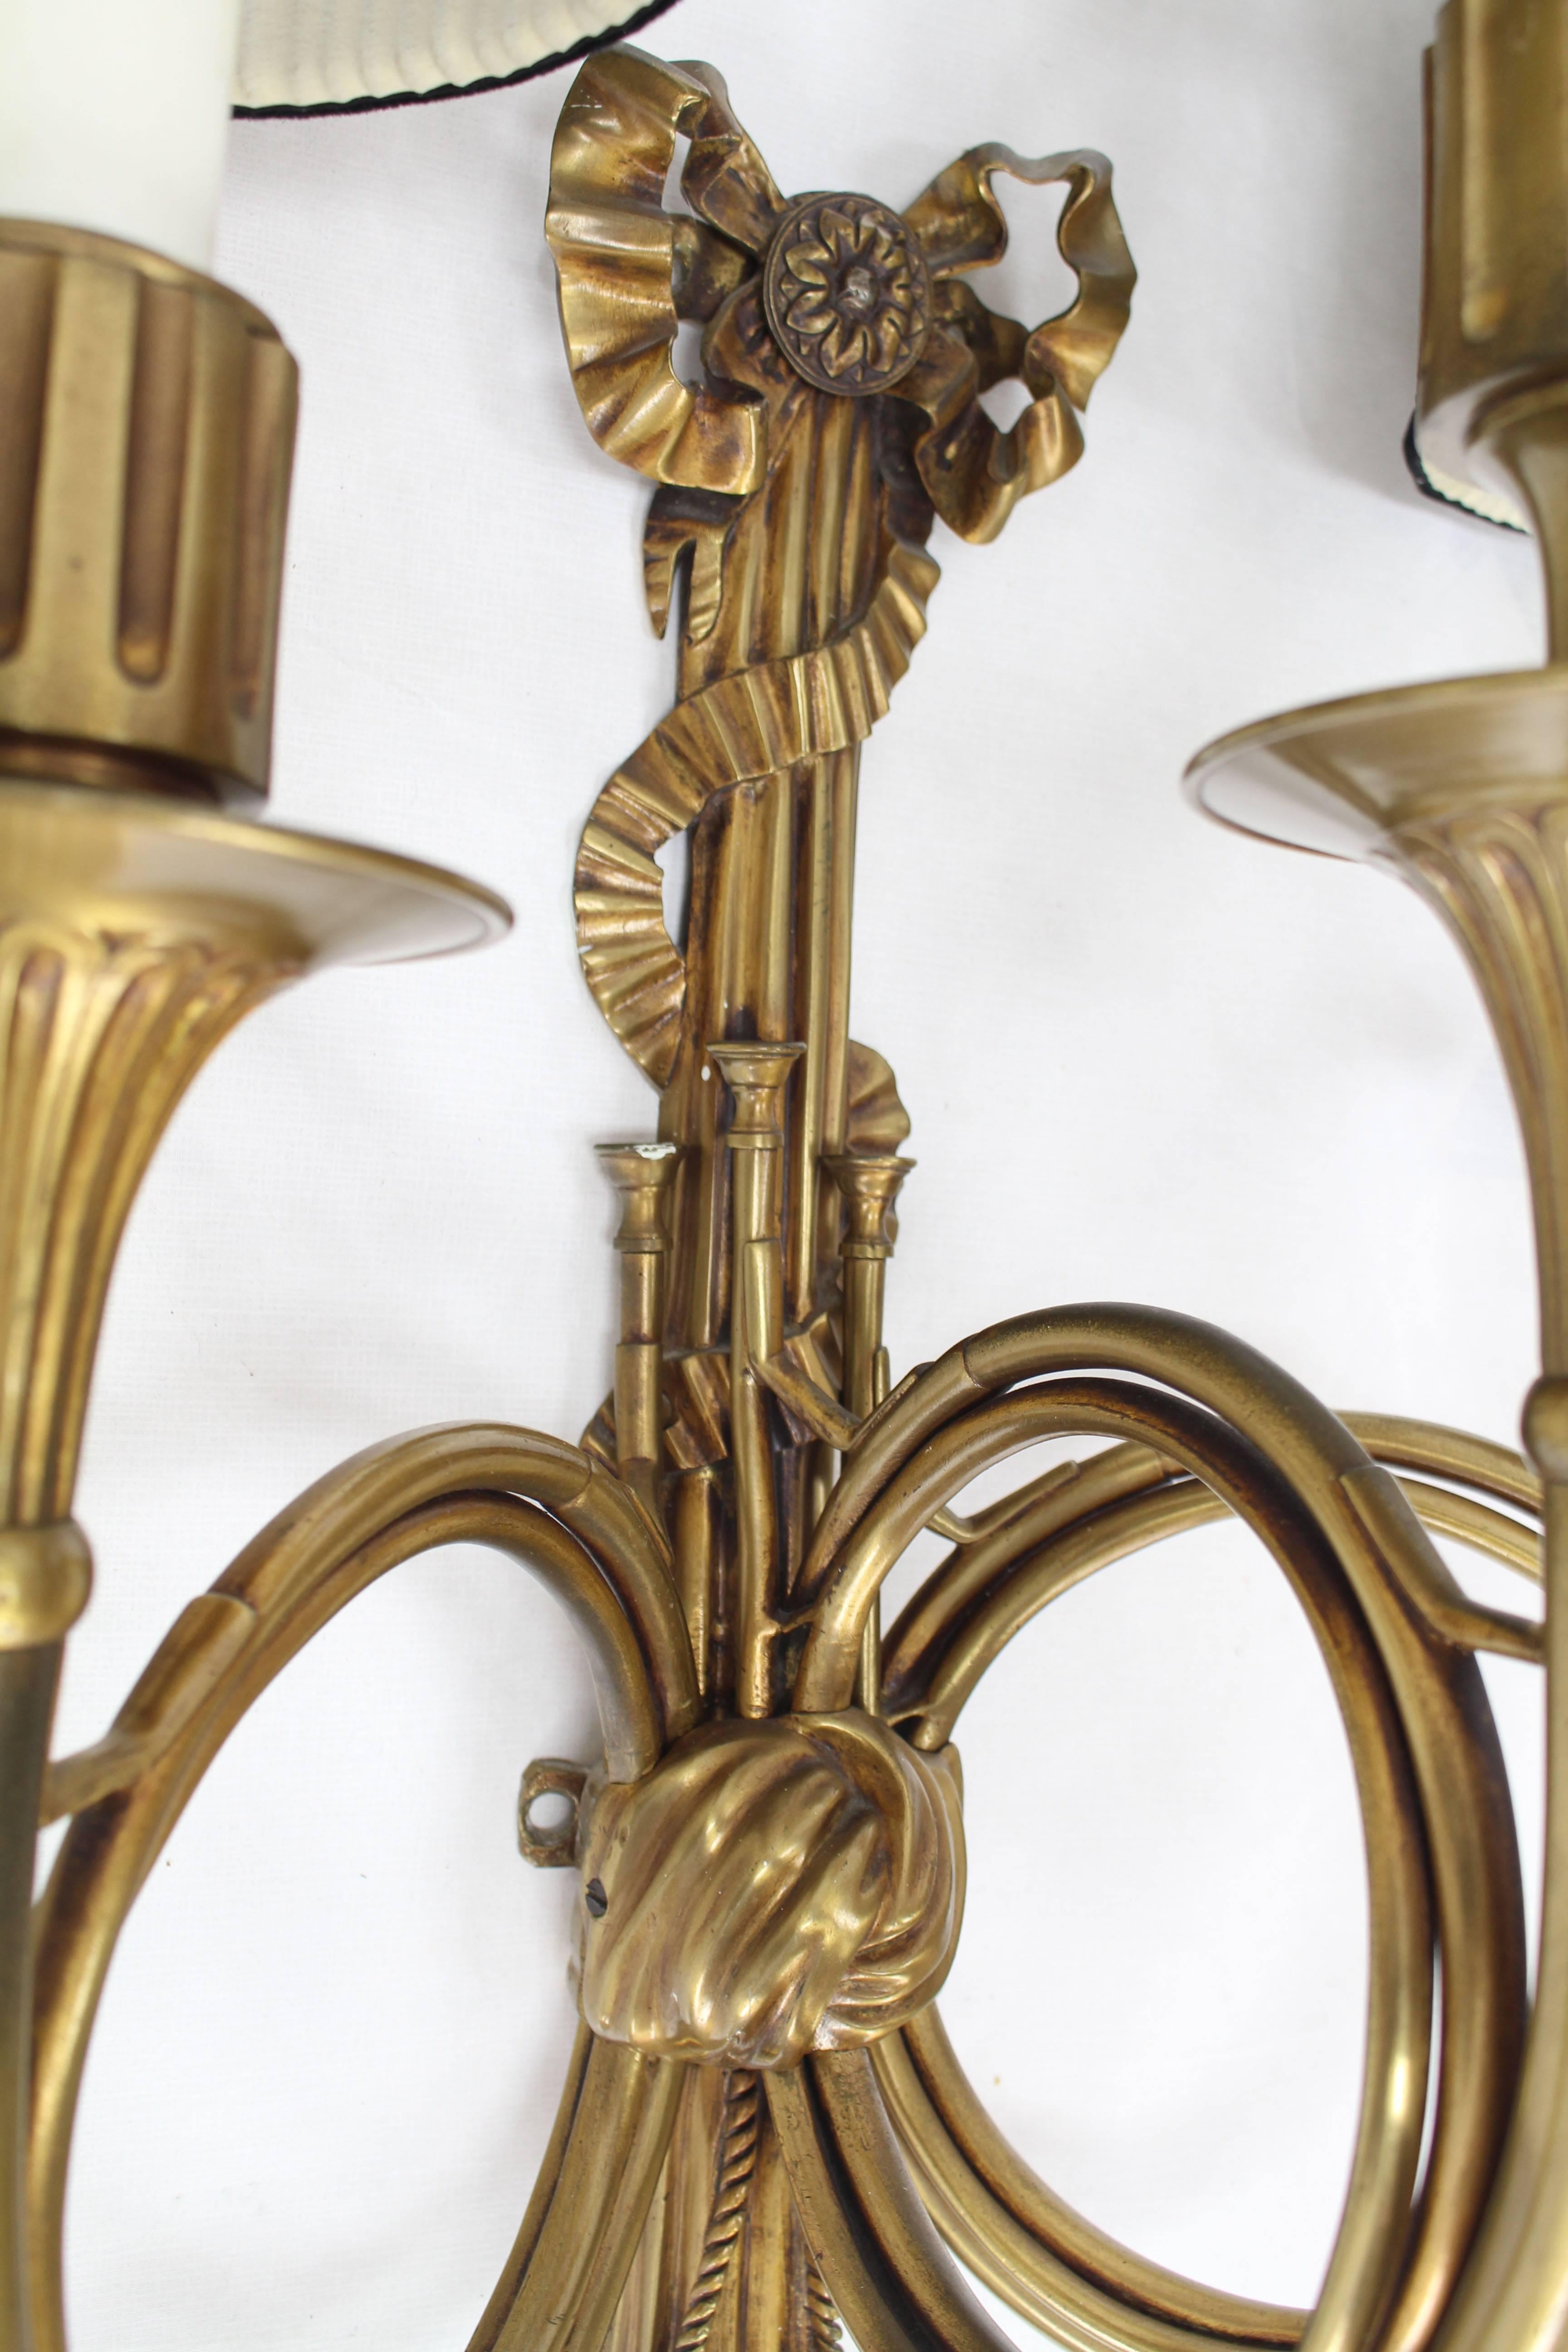 Schöne französische Bronzewandleuchte mit Elementen aus Horn, Quaste und Band.
Dies ist eine schöne und schwere Leuchte mit drei Lichtern und Originalschirmen.